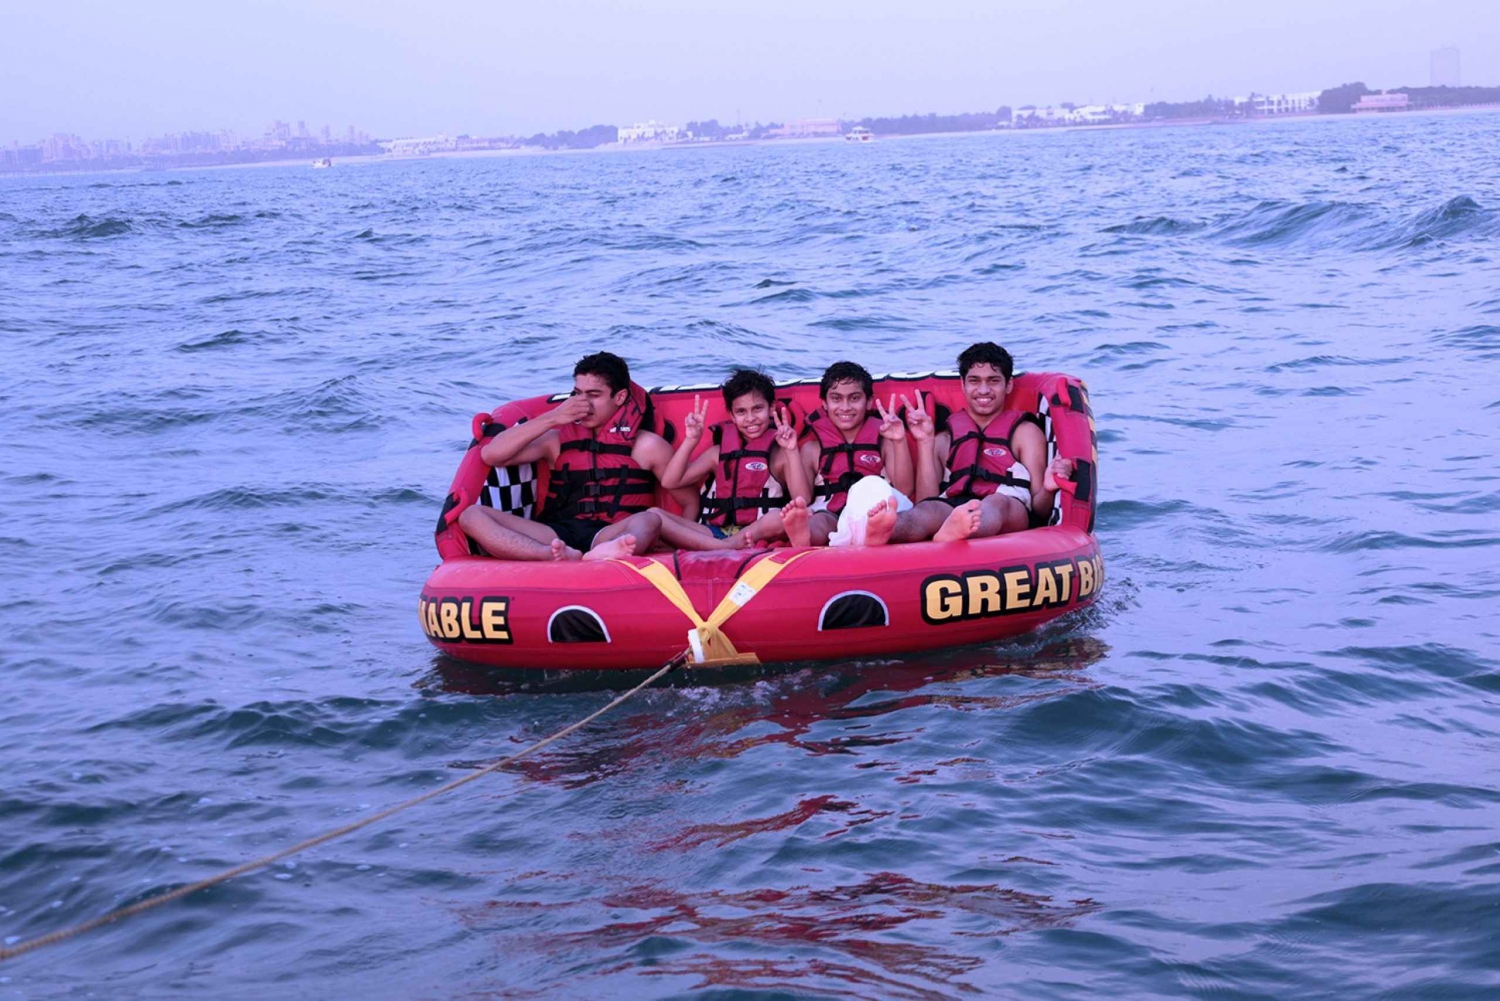 Dubai: Exklusiv 15 minuters åktur med munkbåt för grupp